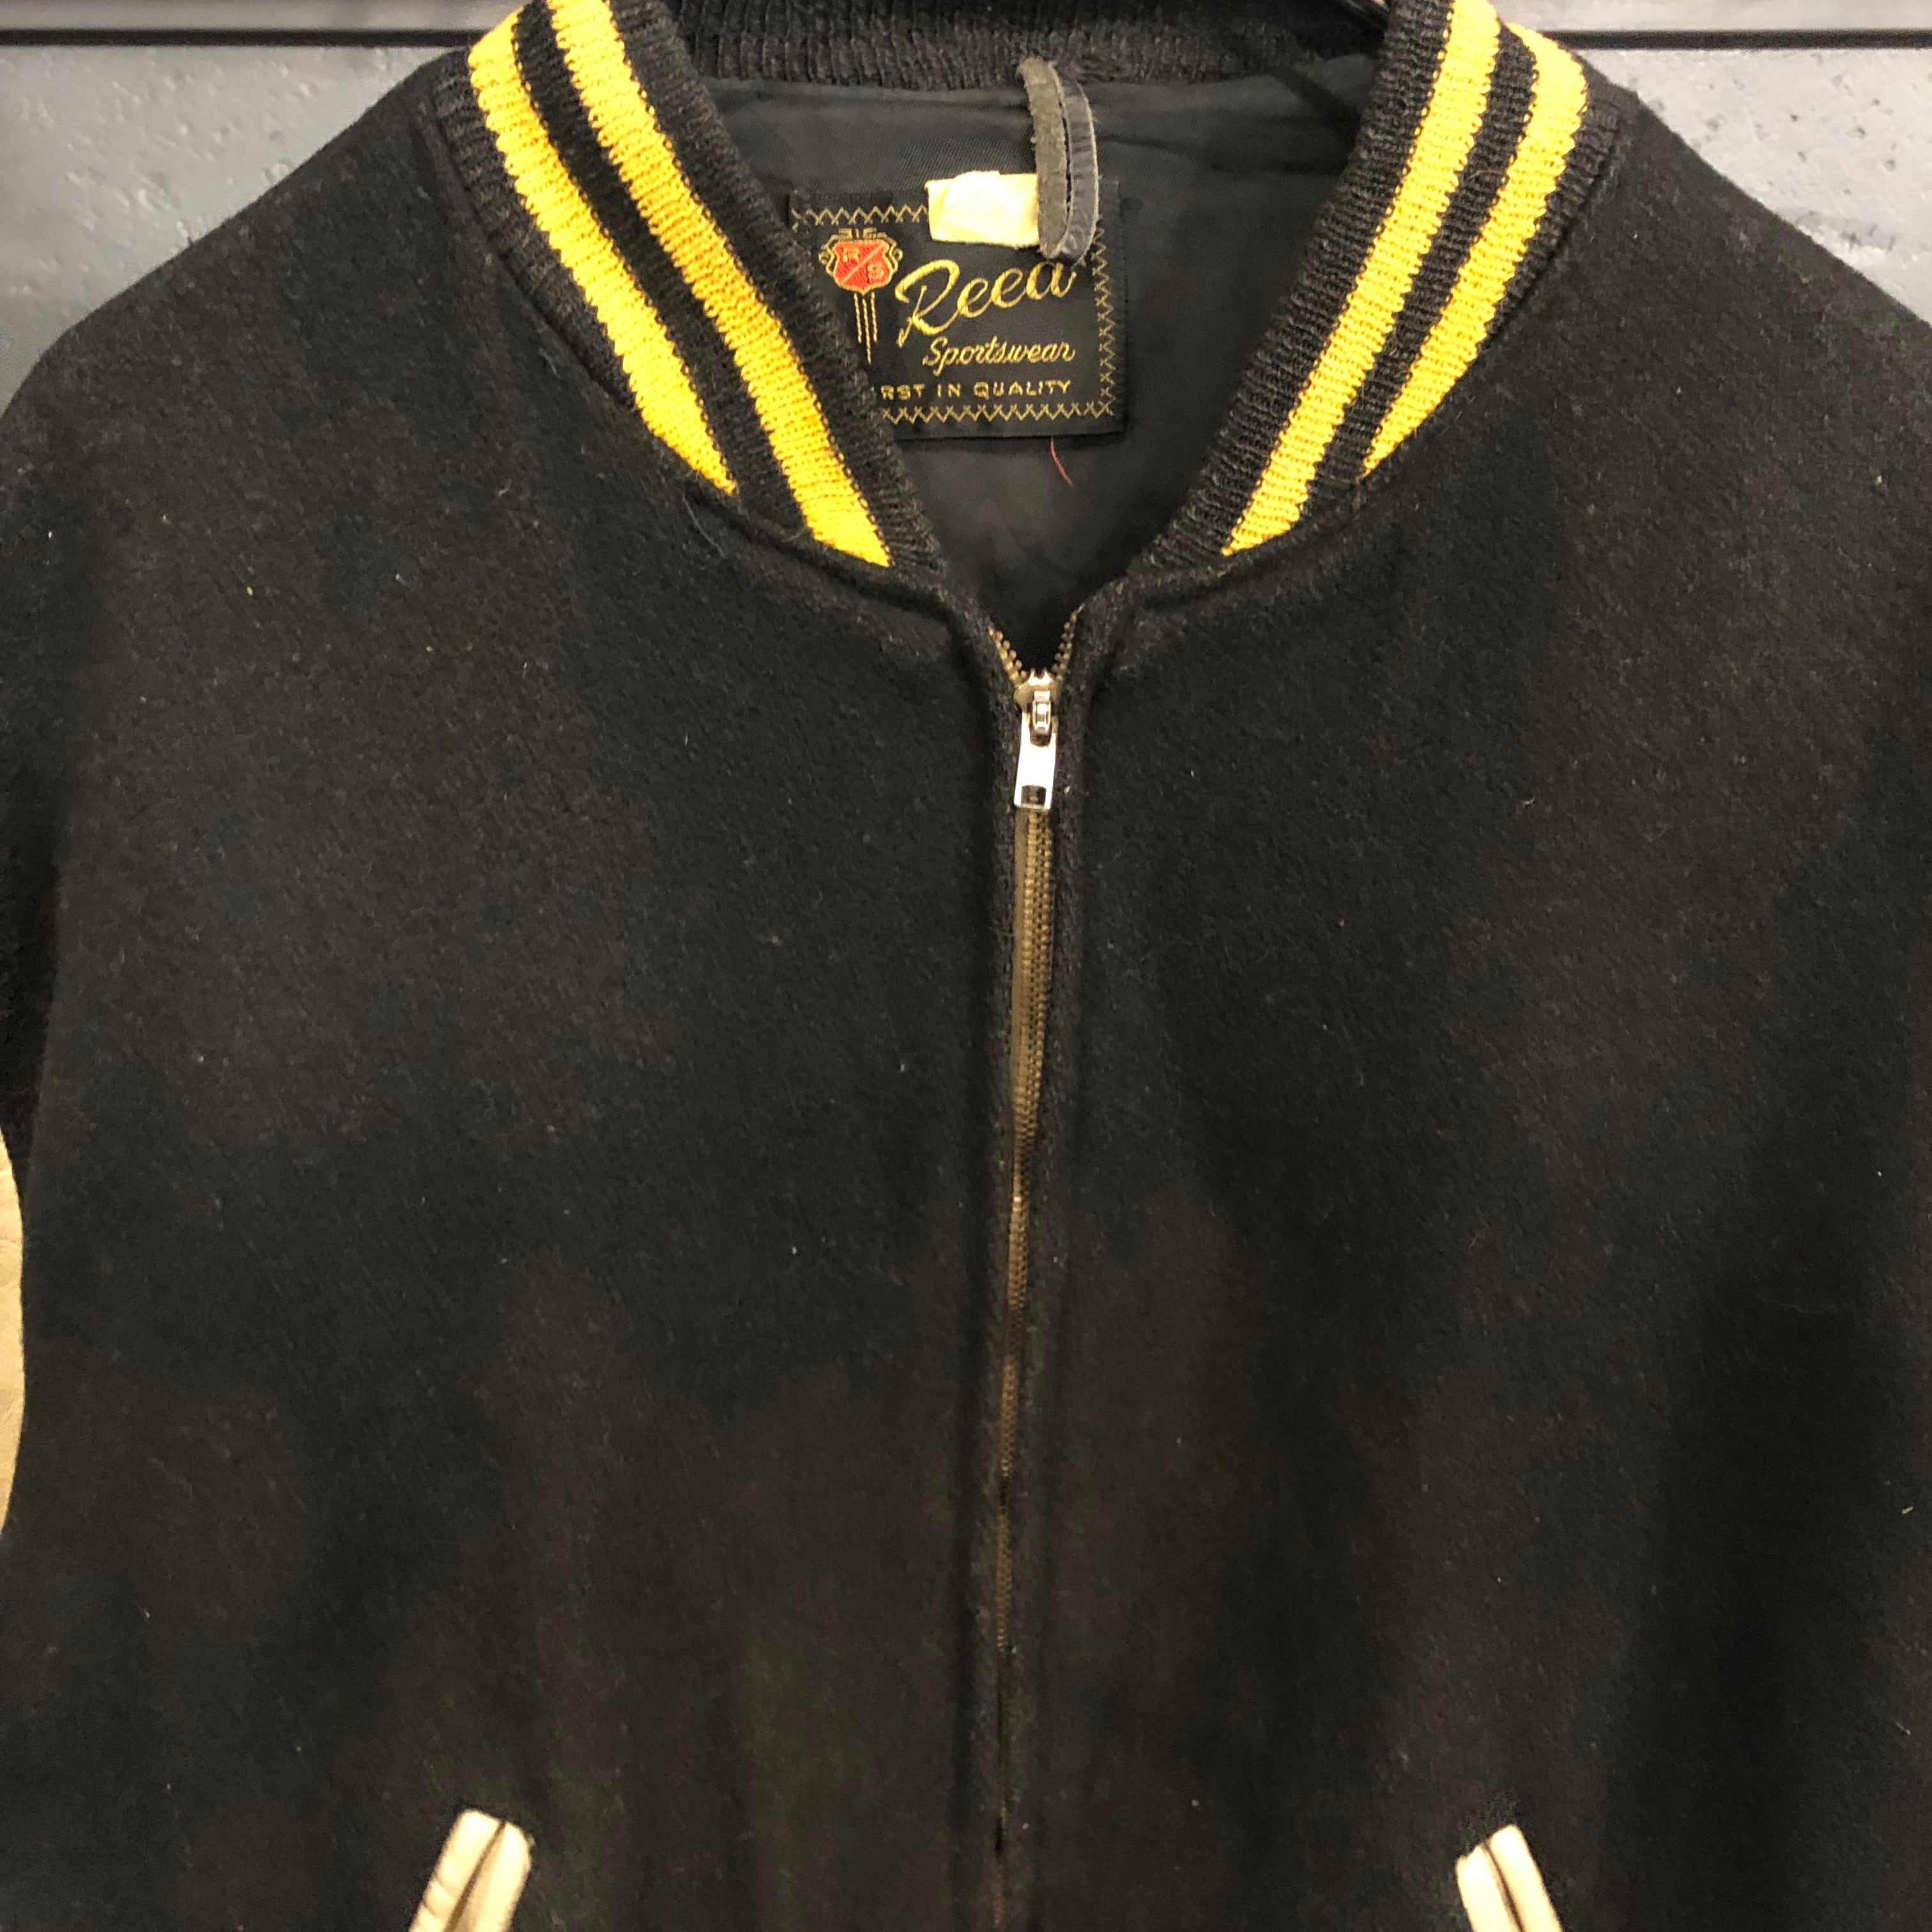 60-70s Reed Sportswear Varsity Jacket